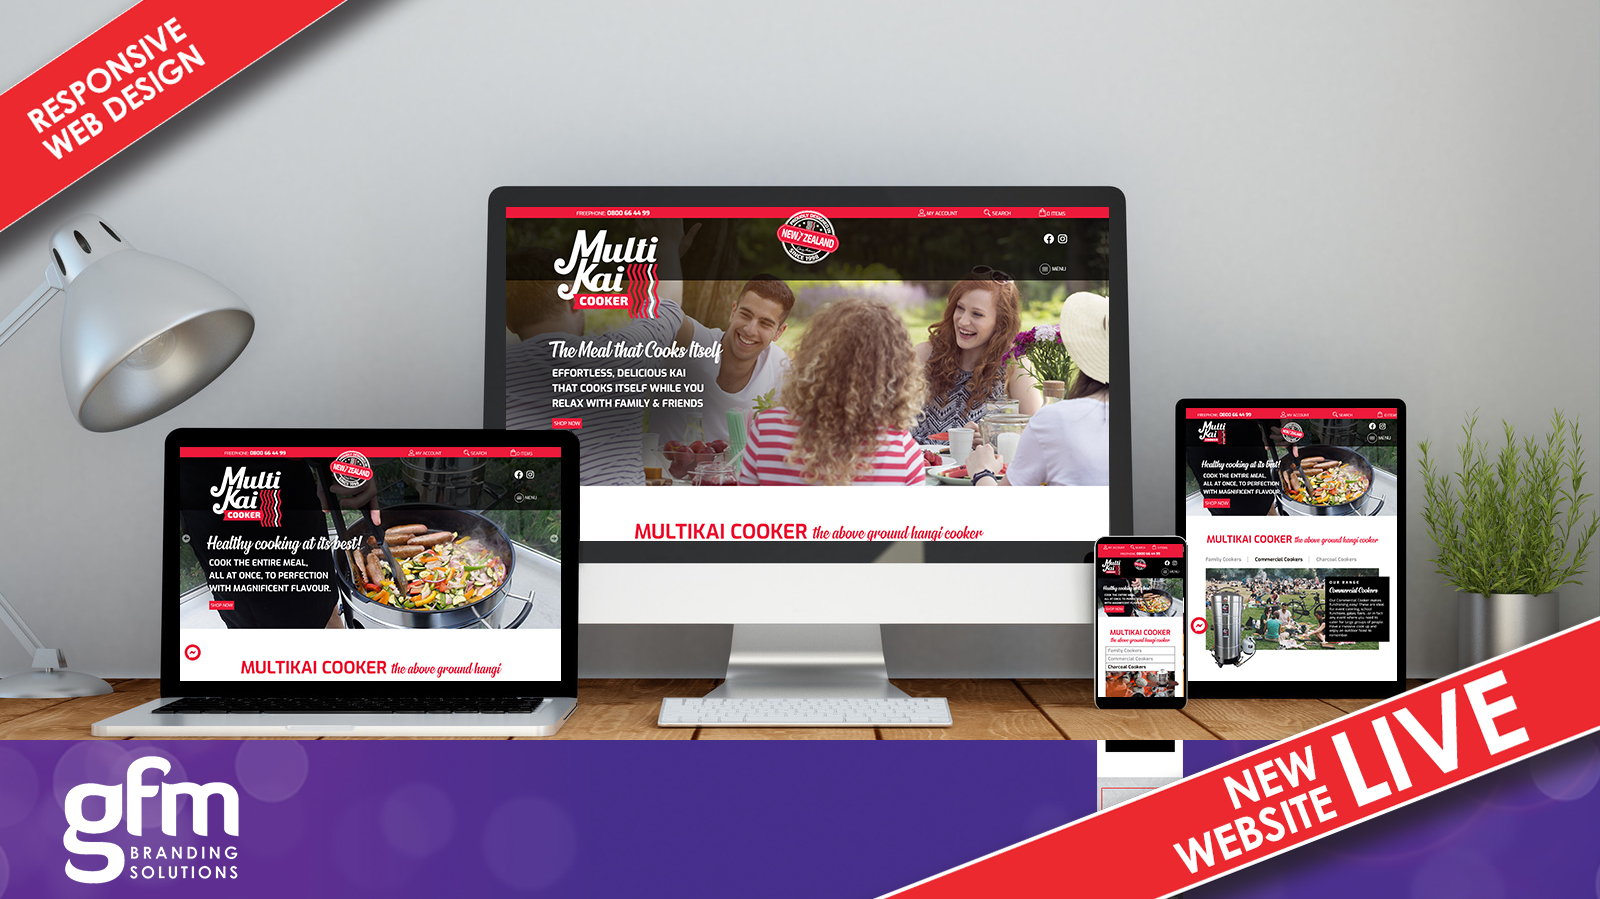 Multikai Cooker fully responsive website design on multiple screens